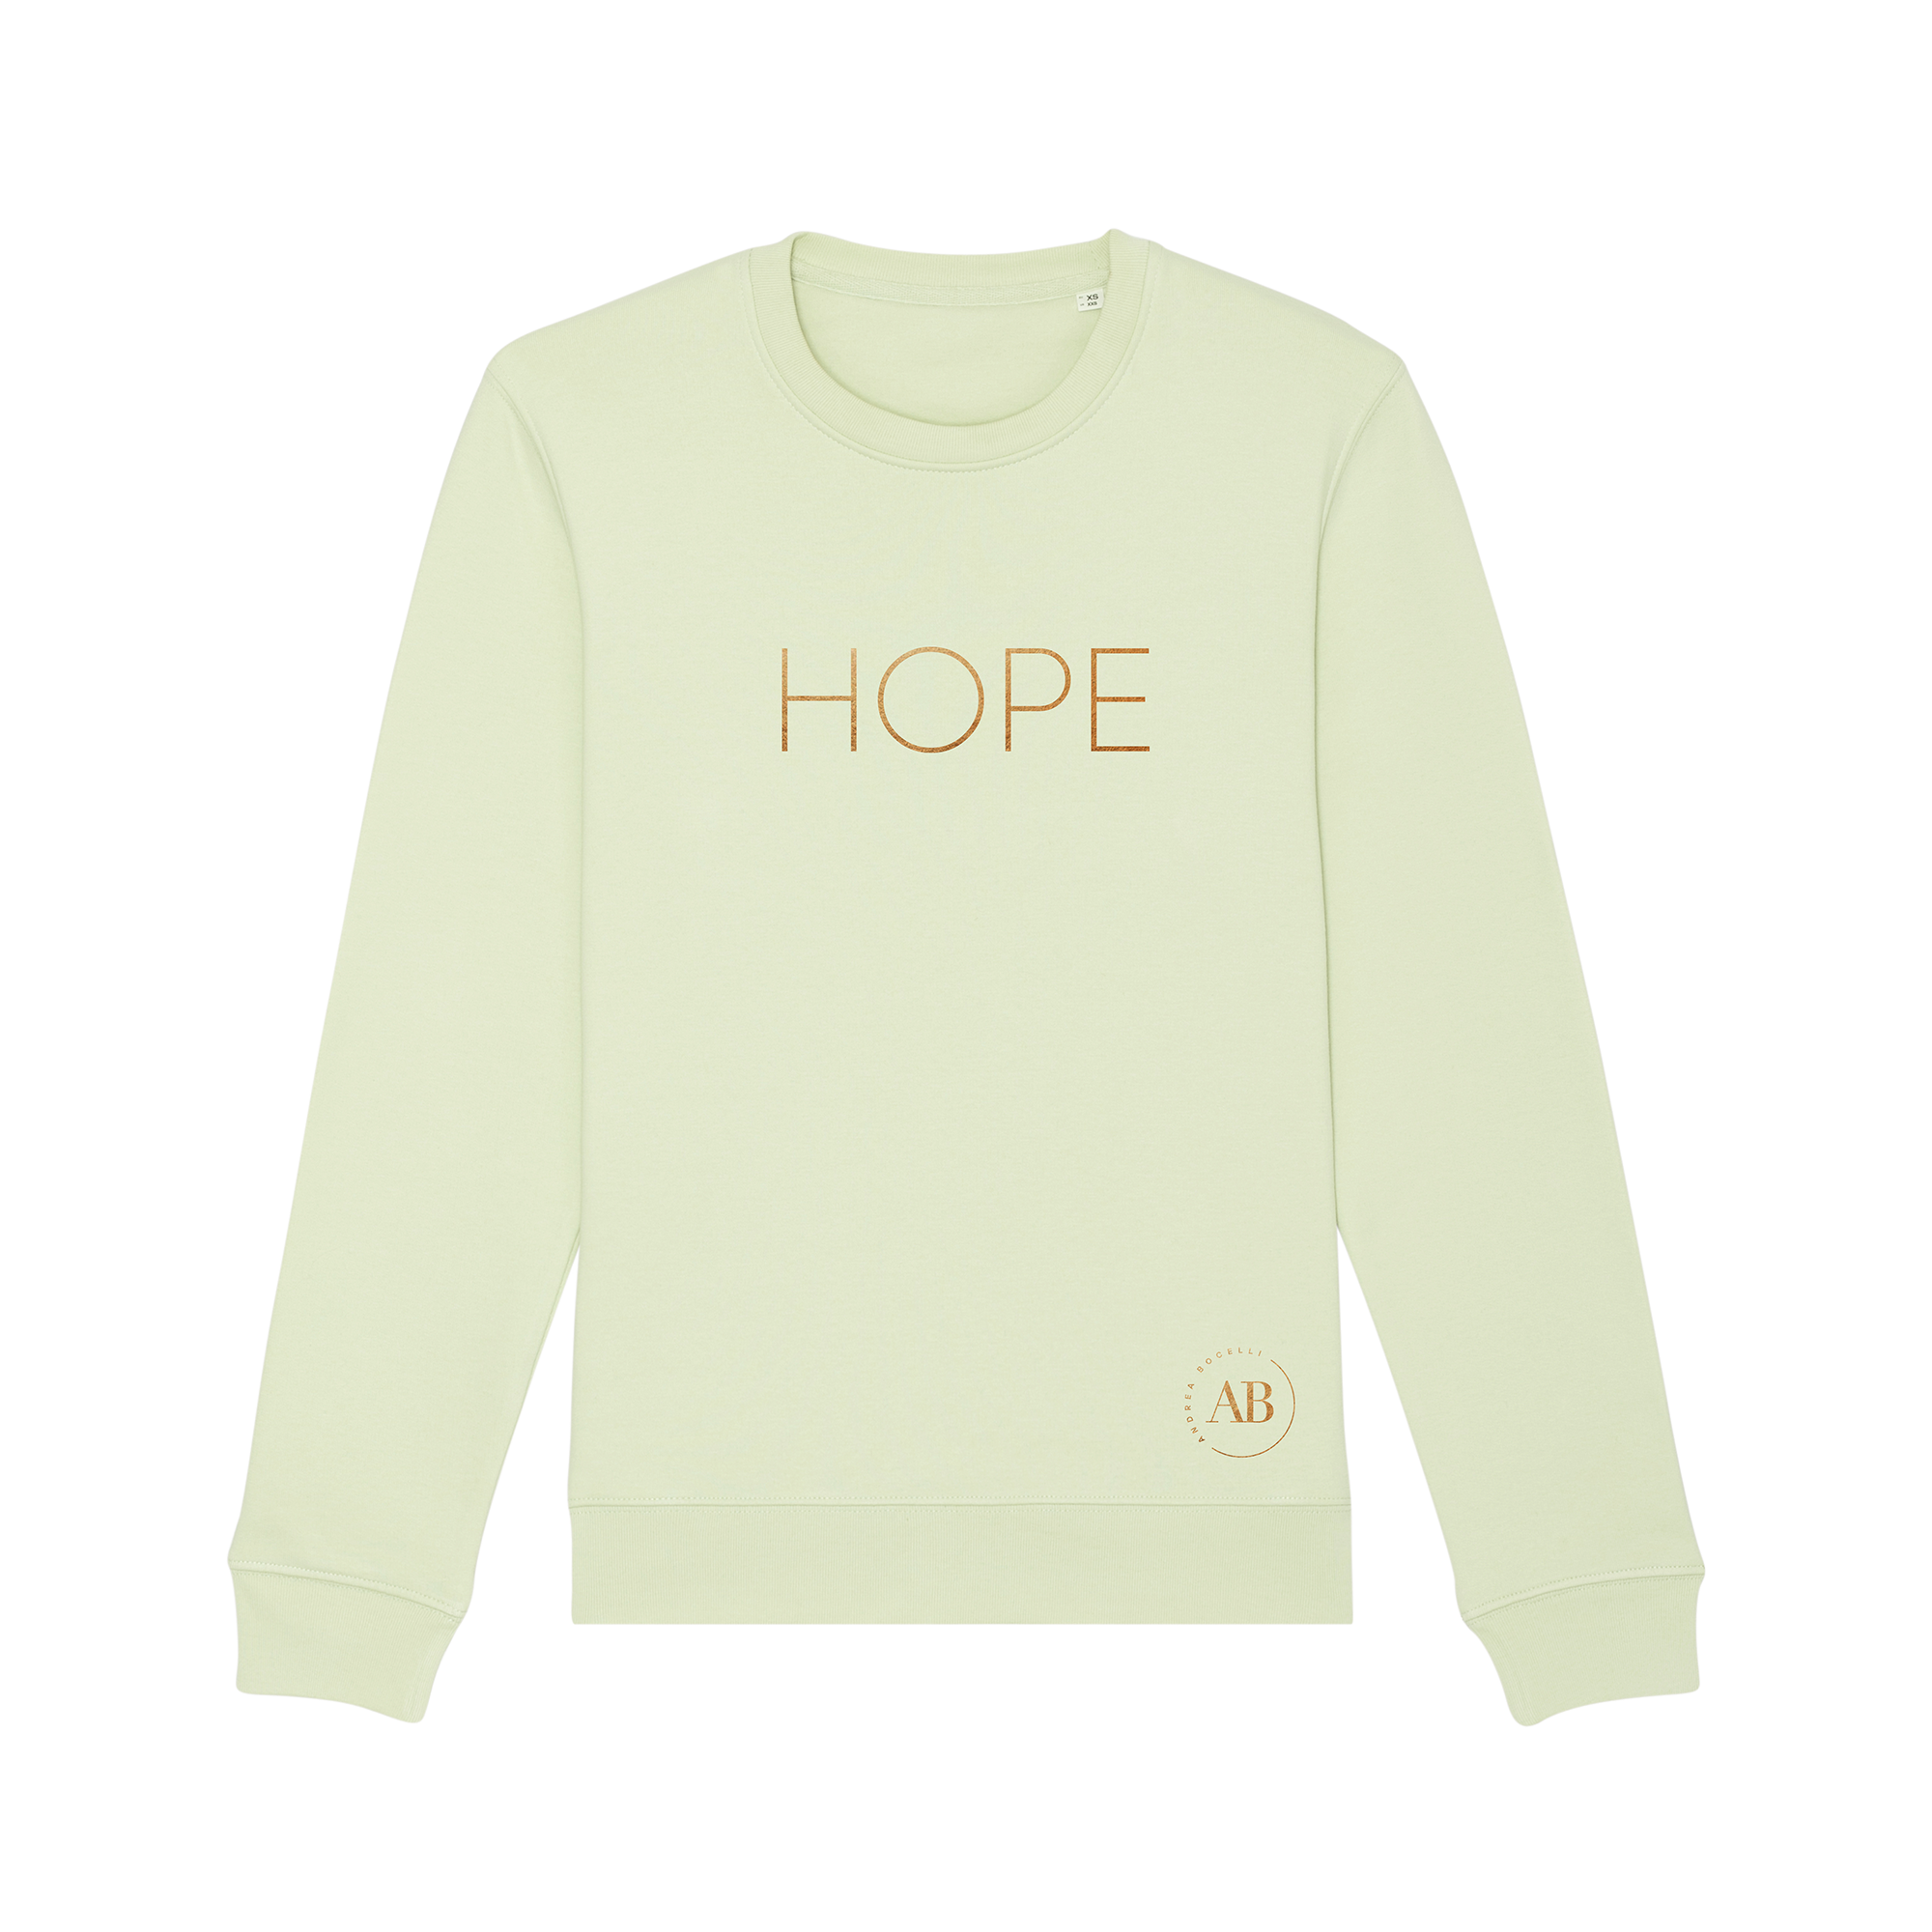 Andrea Bocelli - Hope Sweatshirt